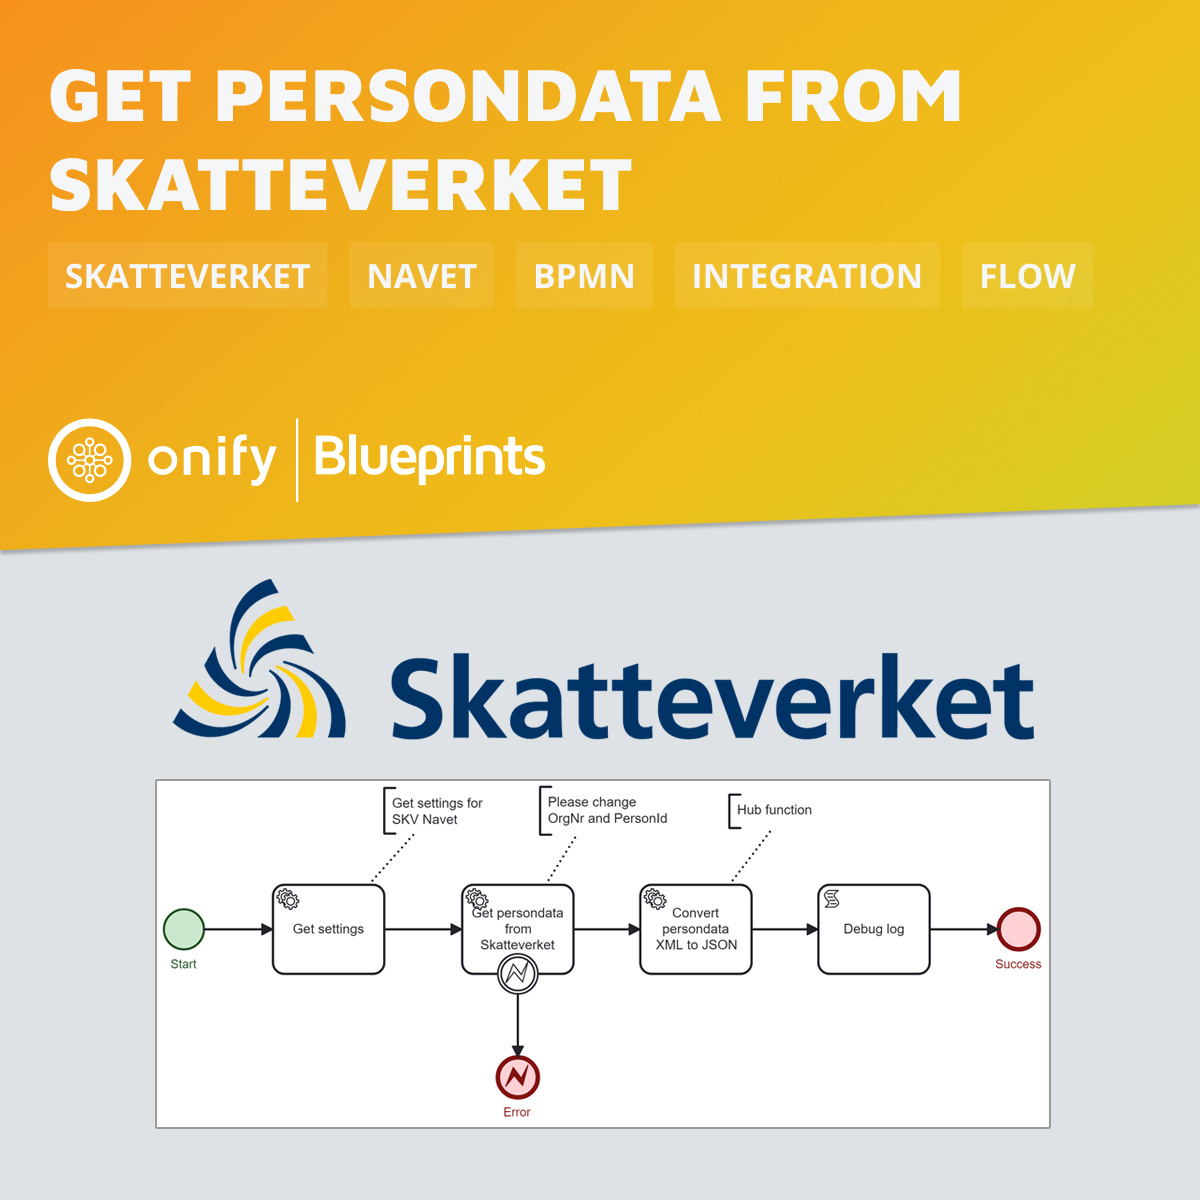 Onify Blueprint – Get persondata from Skatteverket Navet